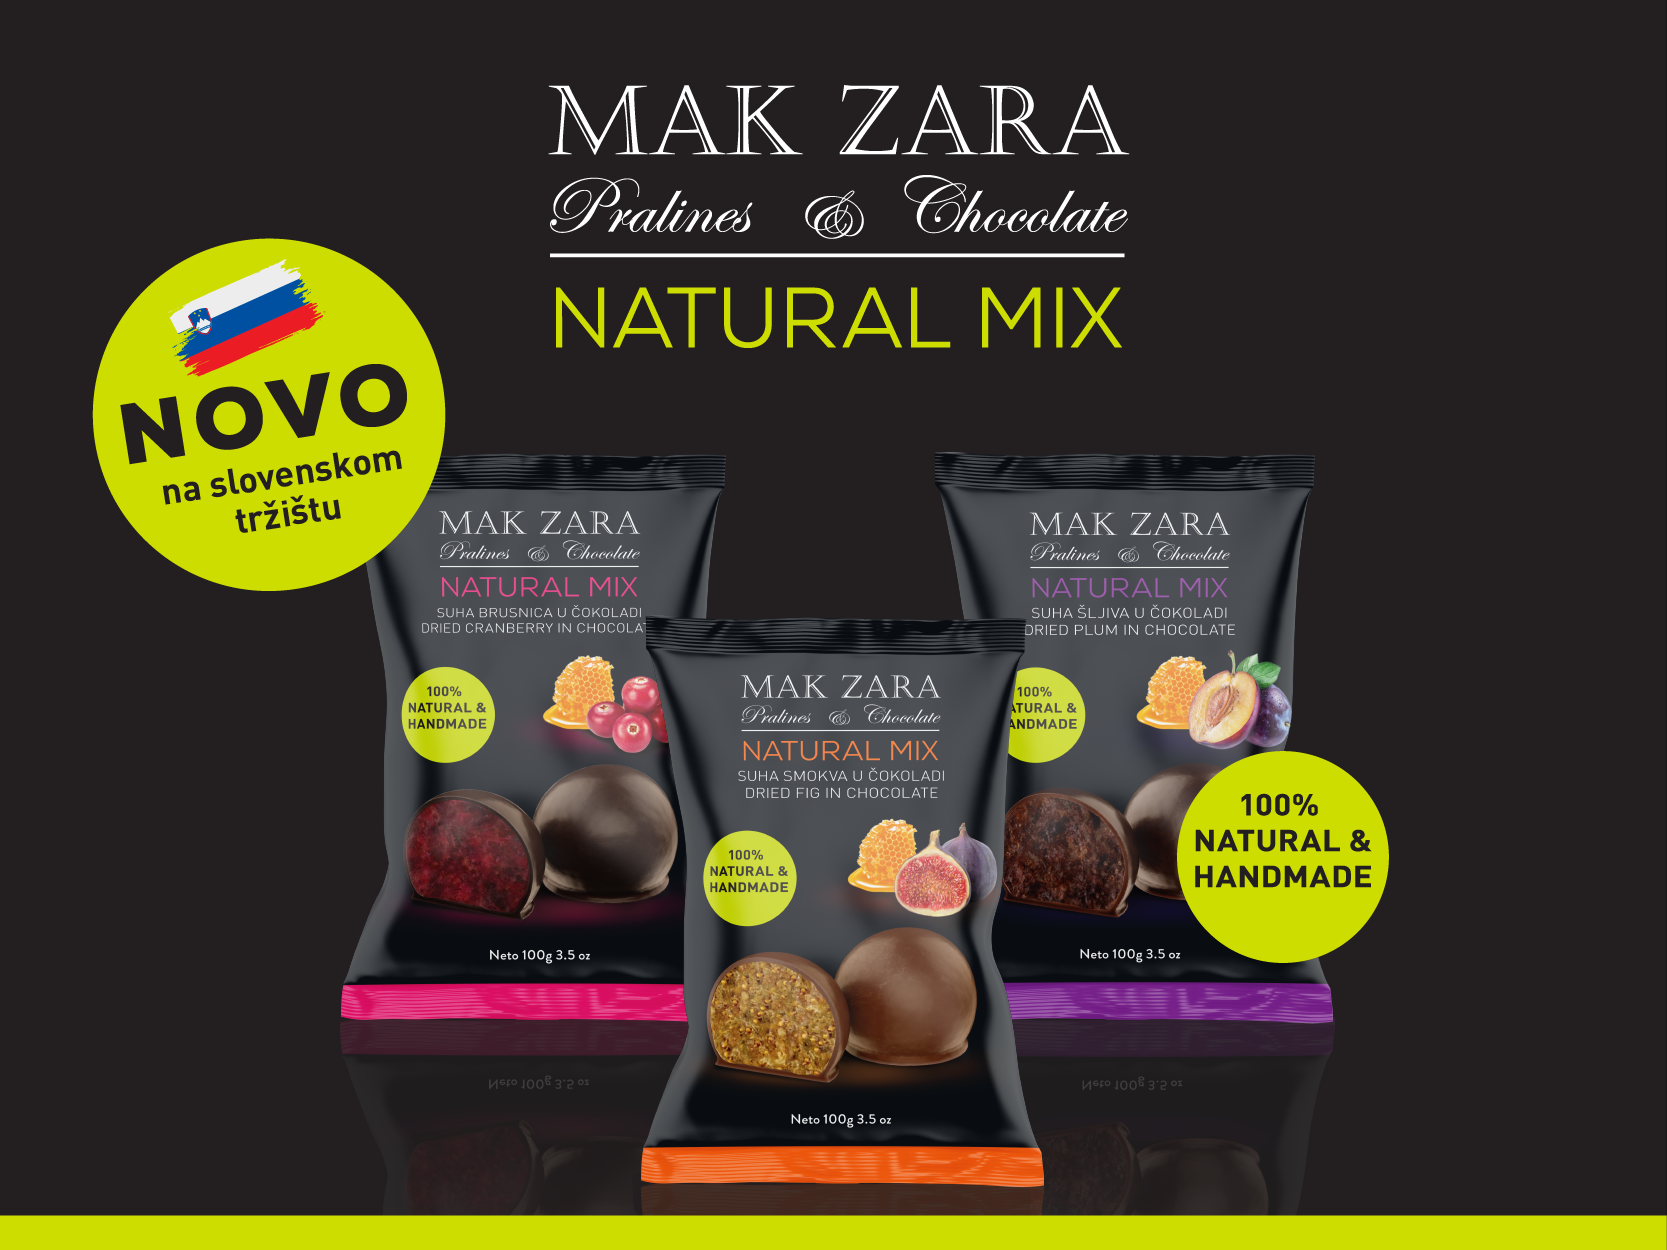 Mak Zara osvaja tržište Slovenije